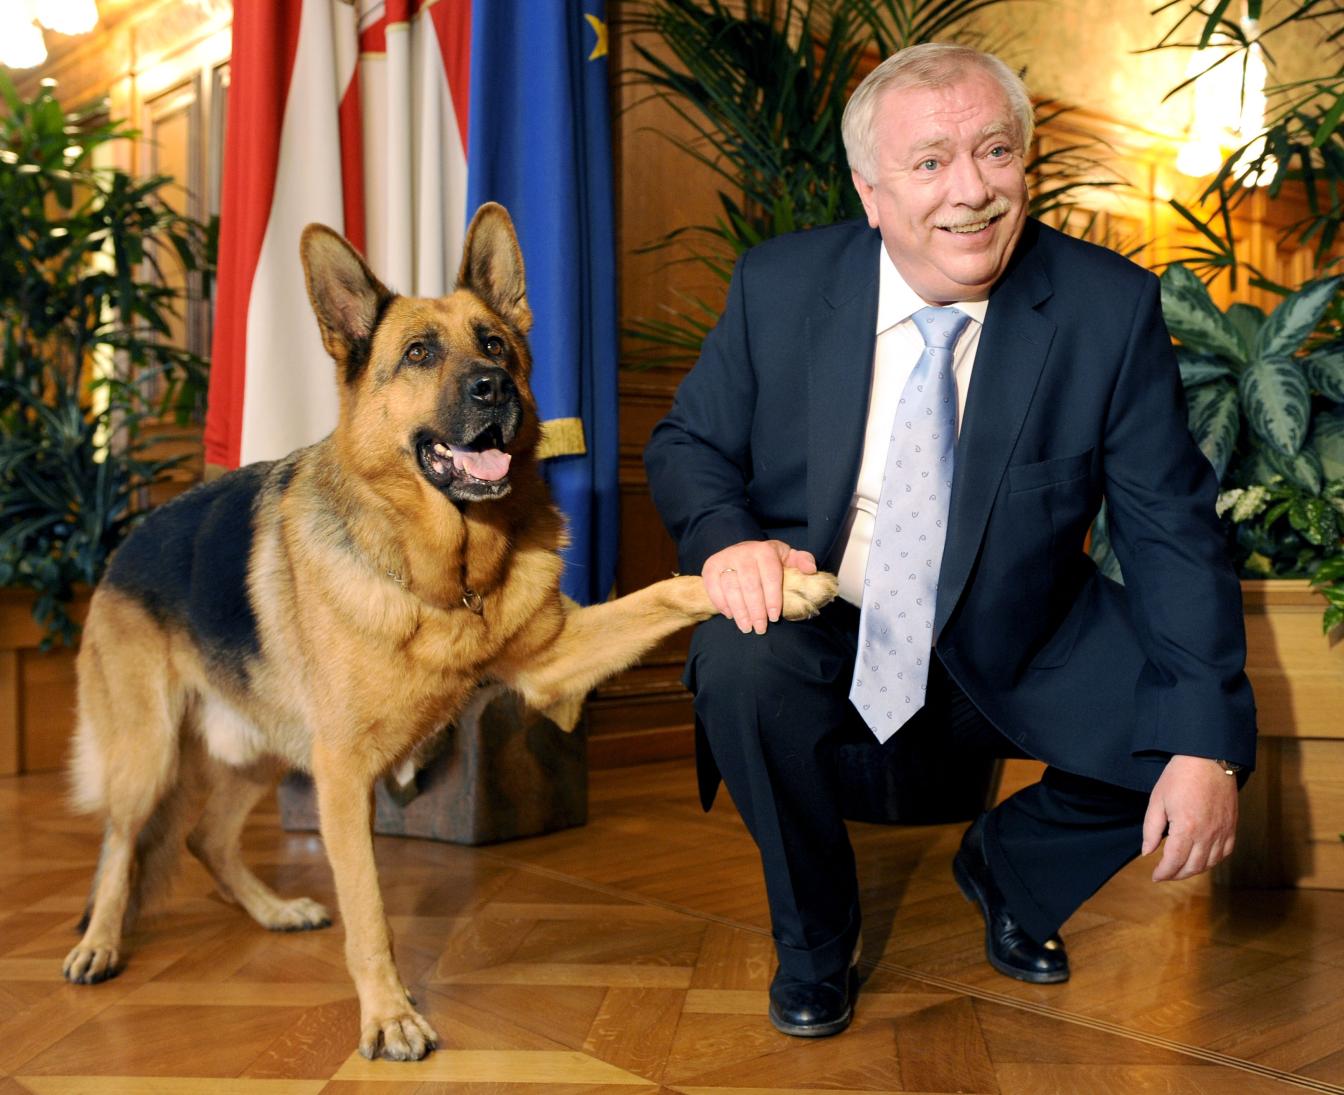 Der Darsteller des "Kommissar Rex" war am Mittwoch, 20. August 2008, zu Besuch beim damaligen Wiener Bürgermeister Michael Häupl.